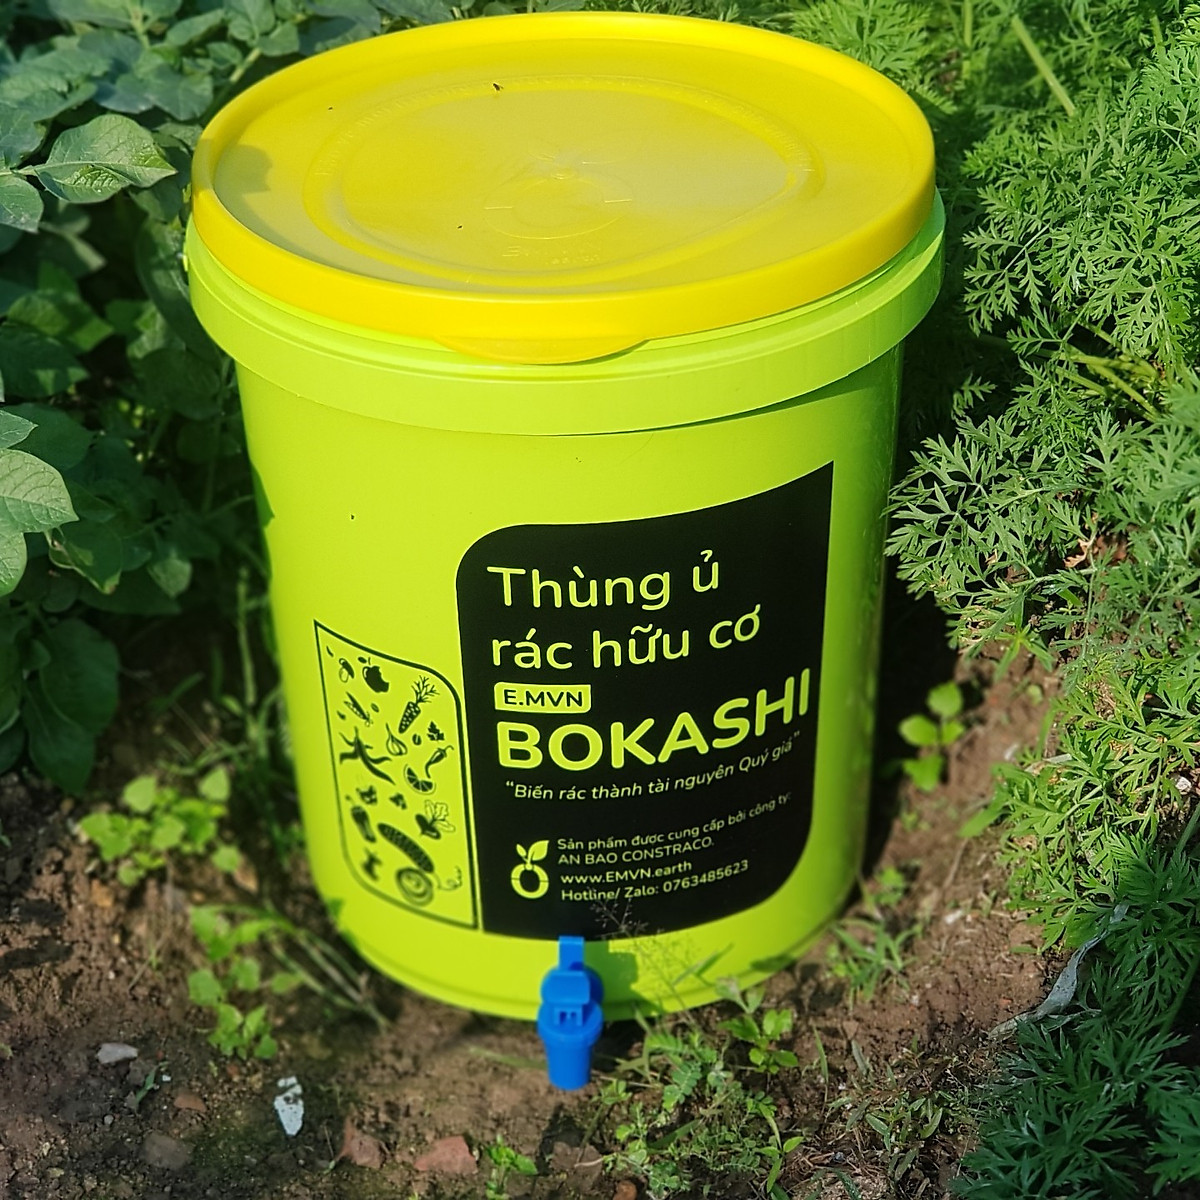 Combo thùng ủ rác hữu cơ 4 thùng + 2 túi Bokashi